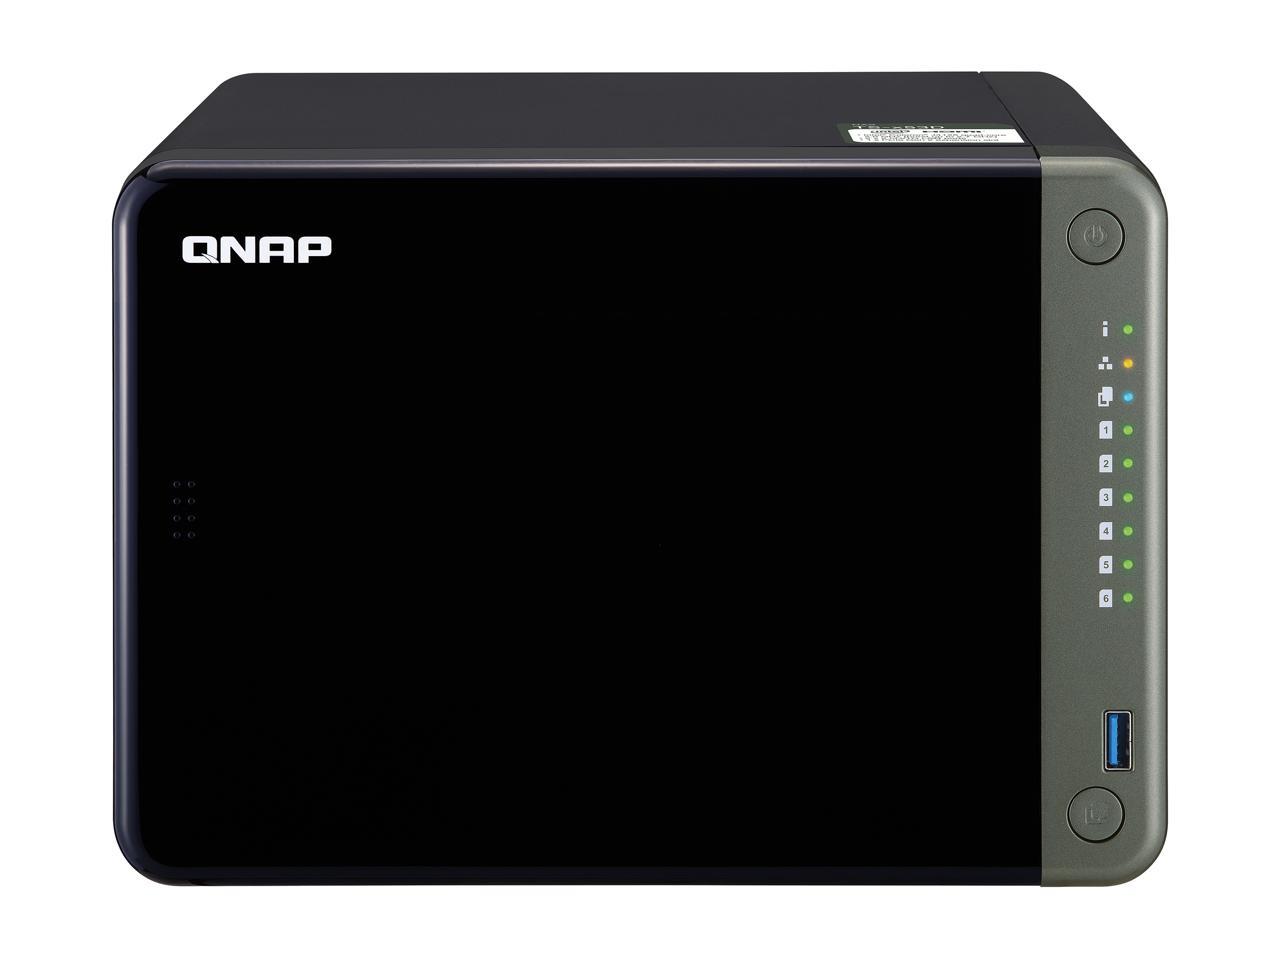 Qnap NAS QNAP TS-653D-4G-US RT